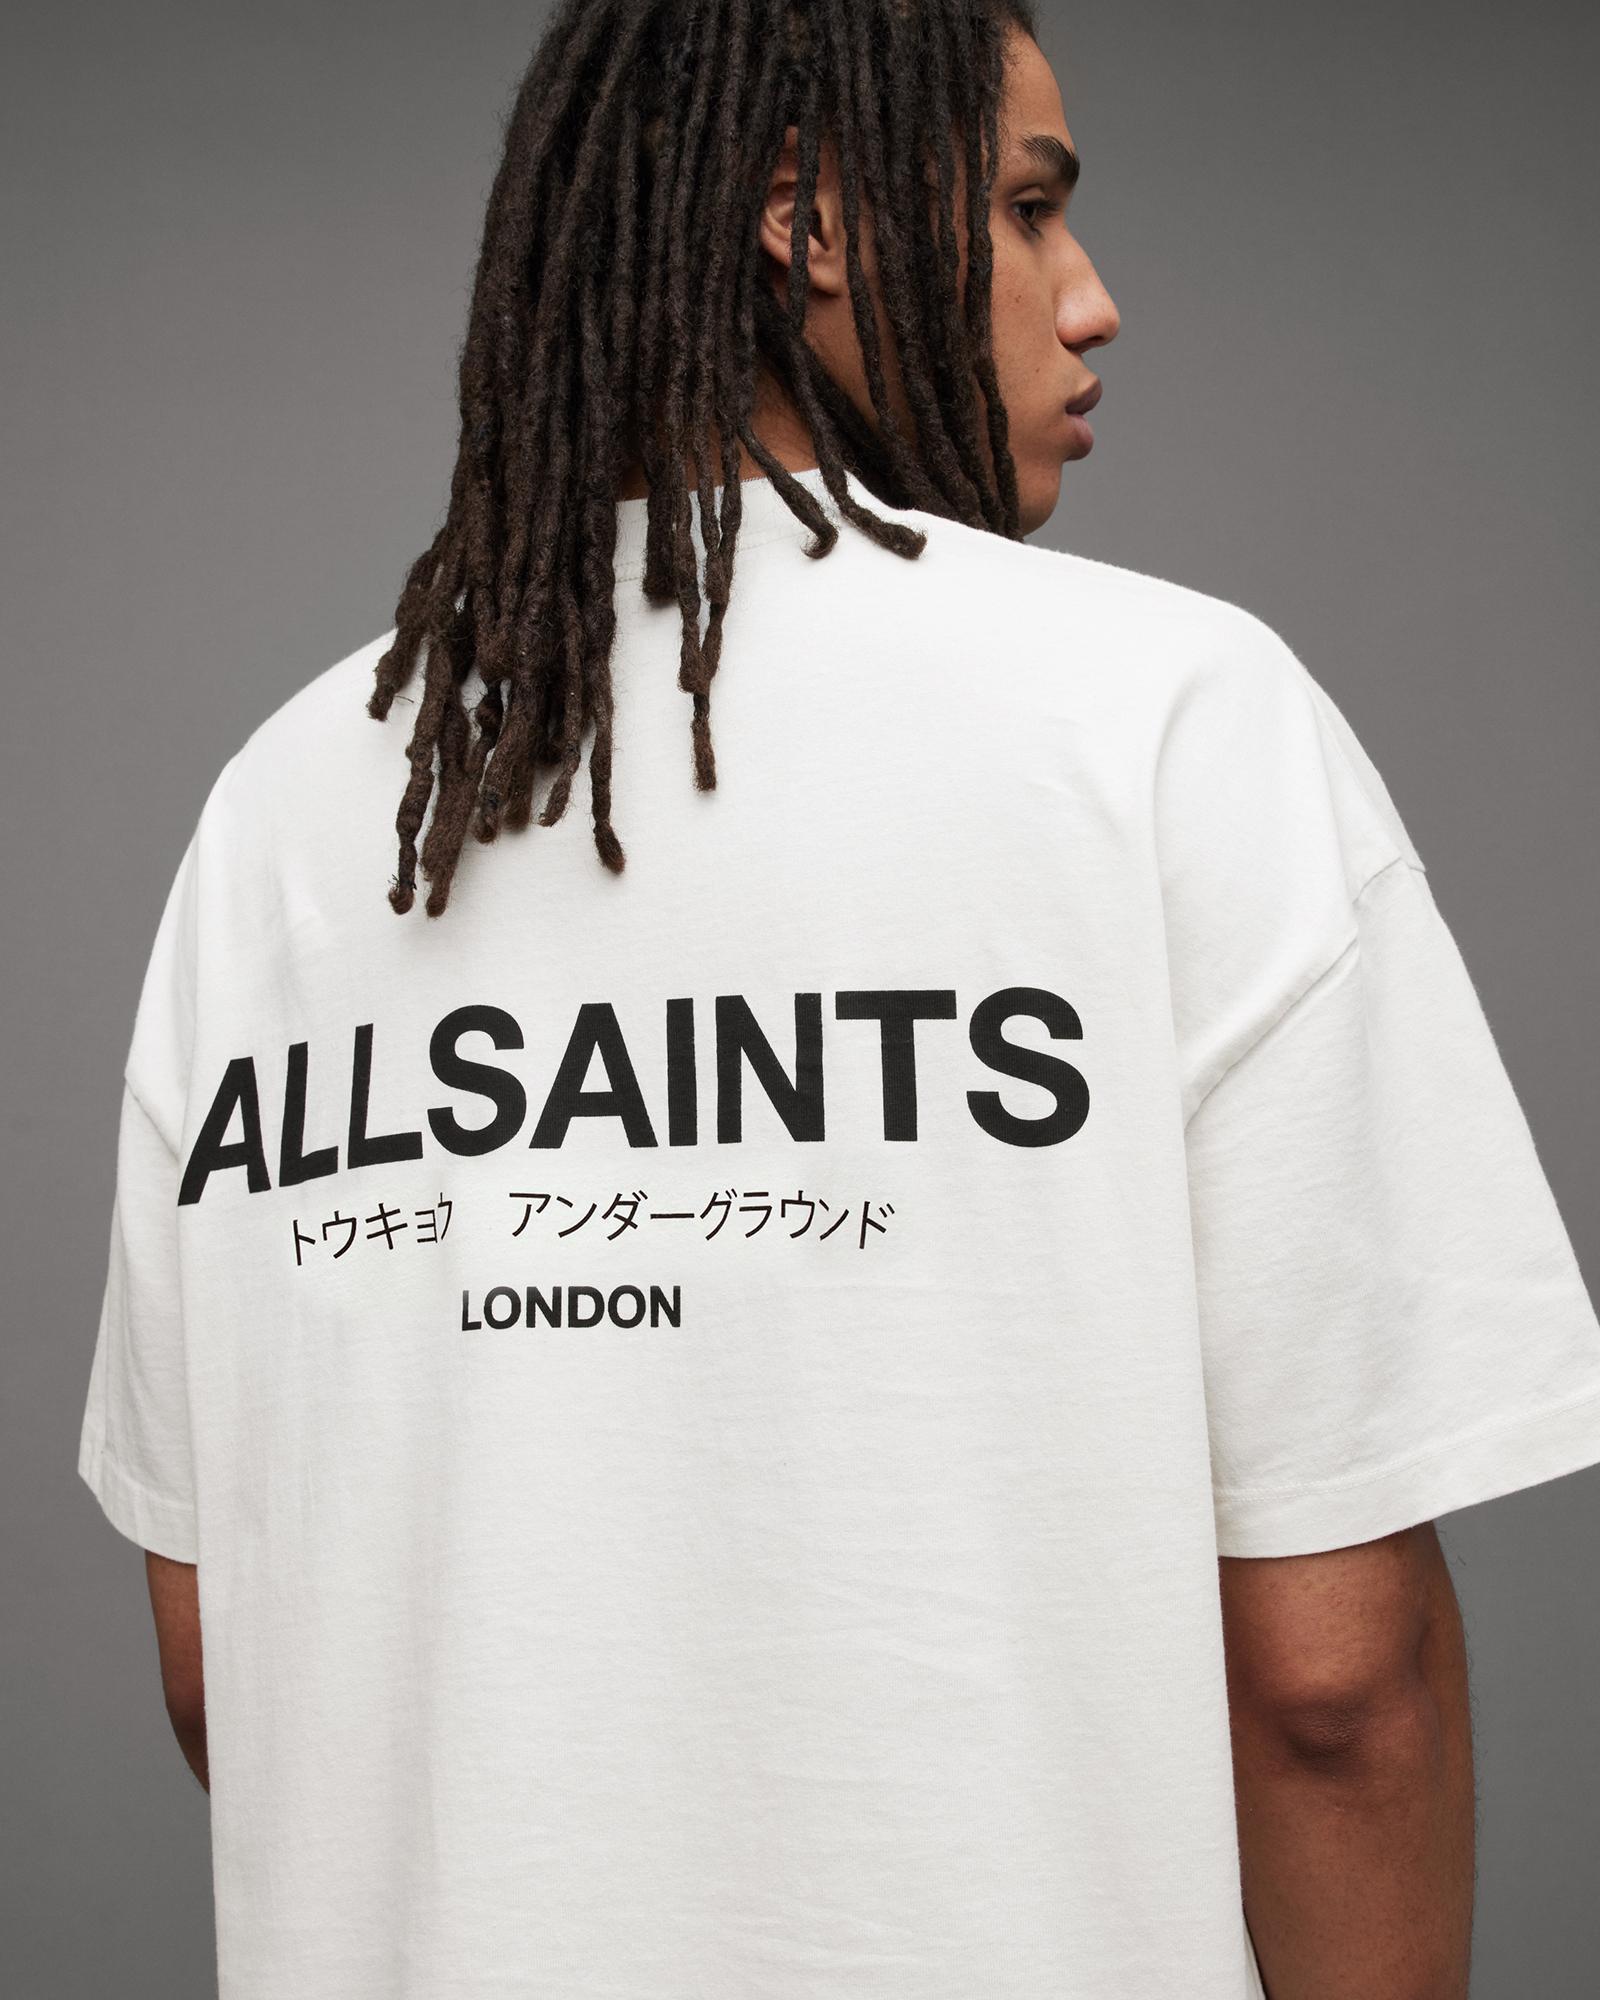 AllSaints Underground Oversized Crew Neck T-Shirt Product Image